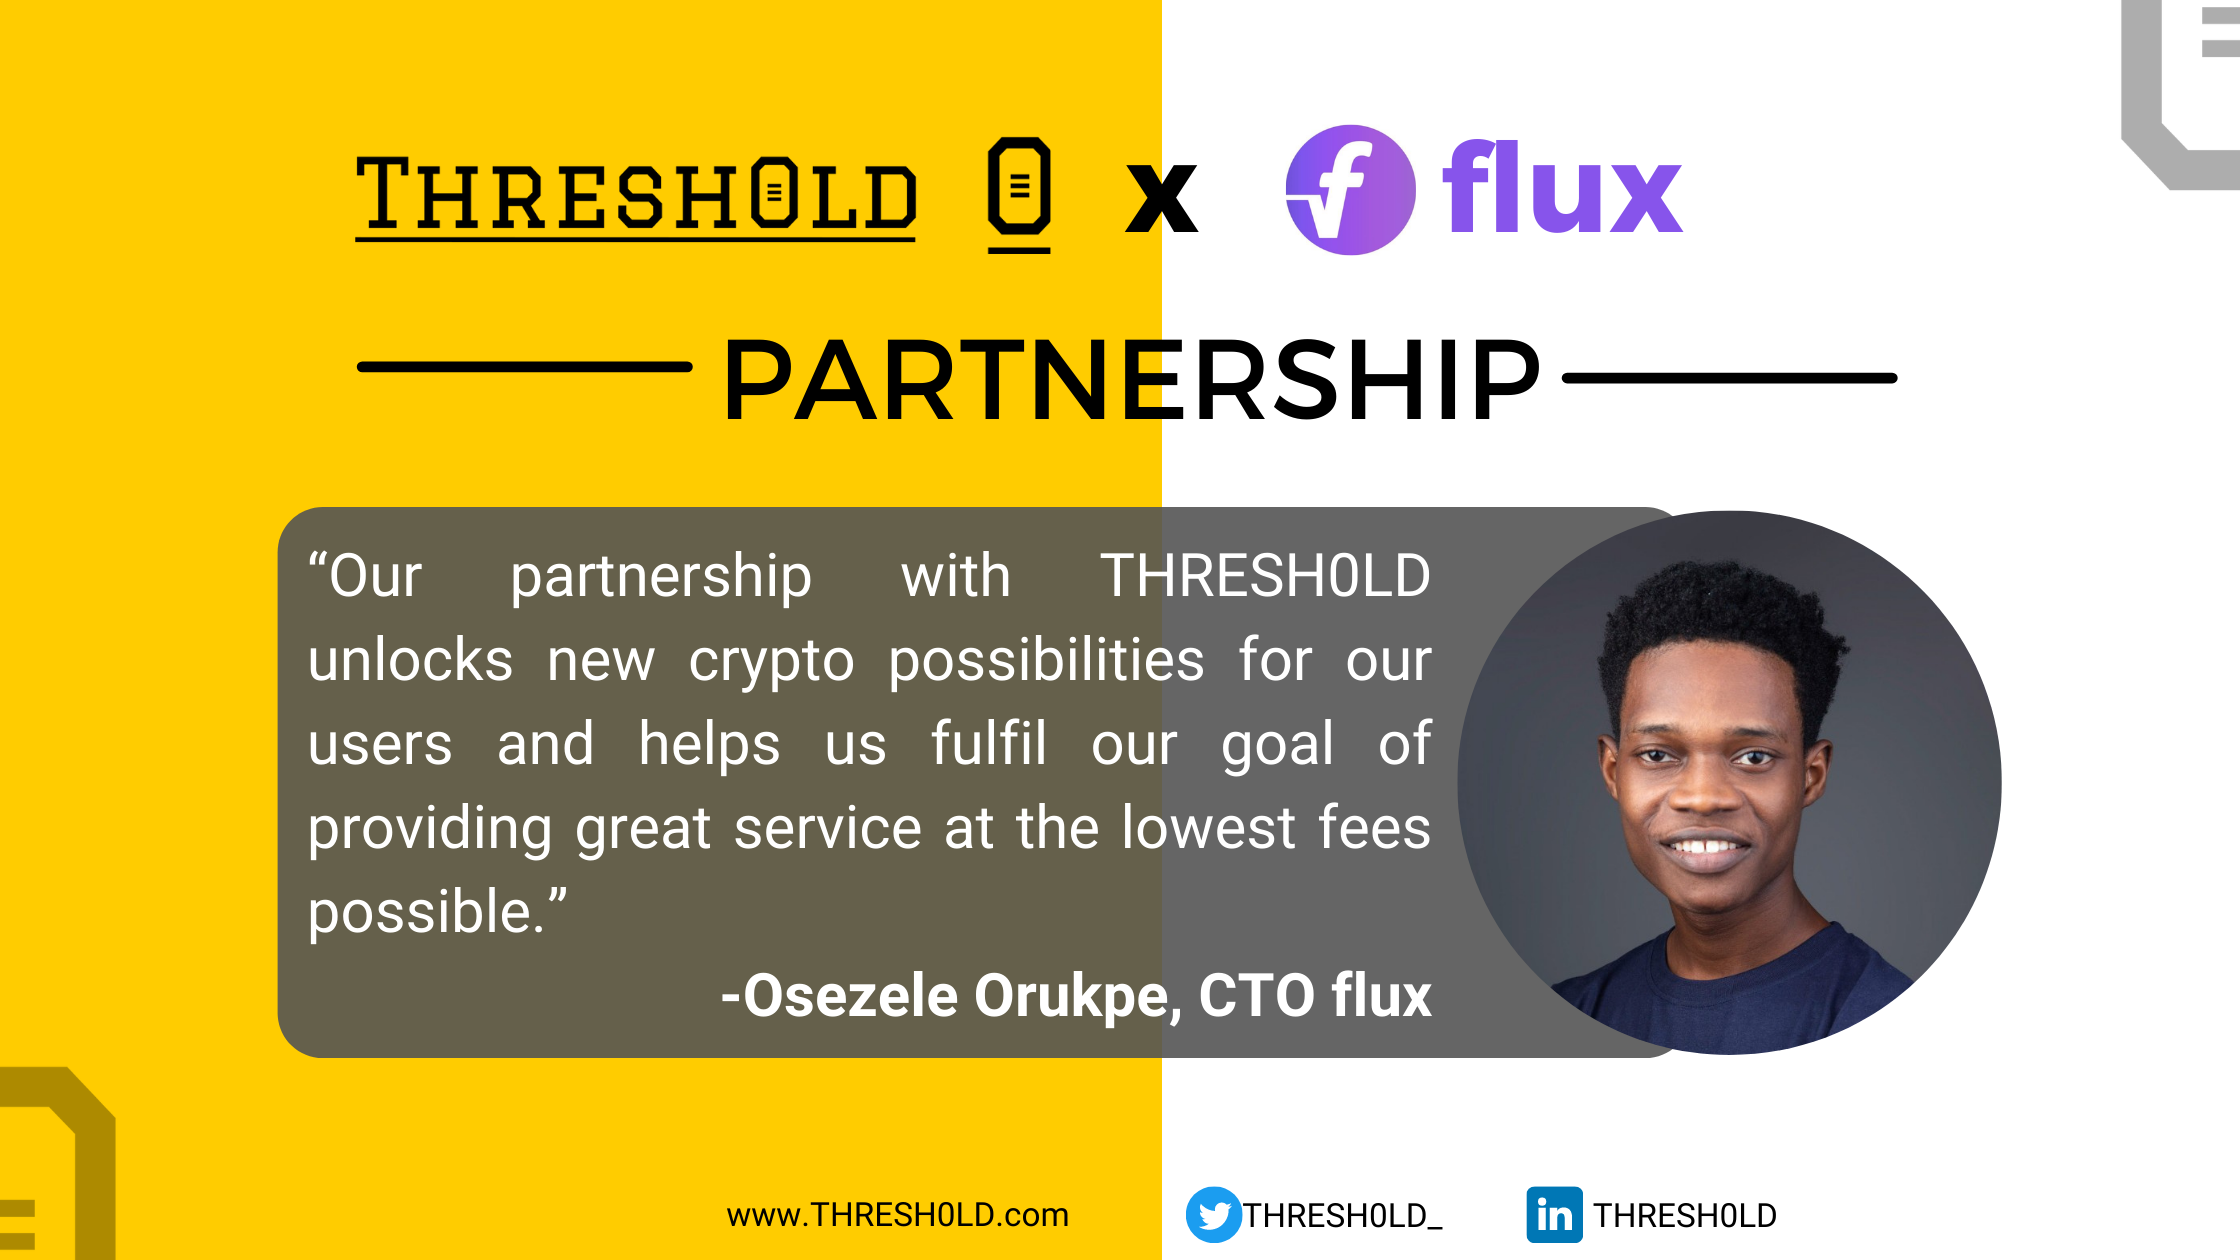 flux partnership announcement